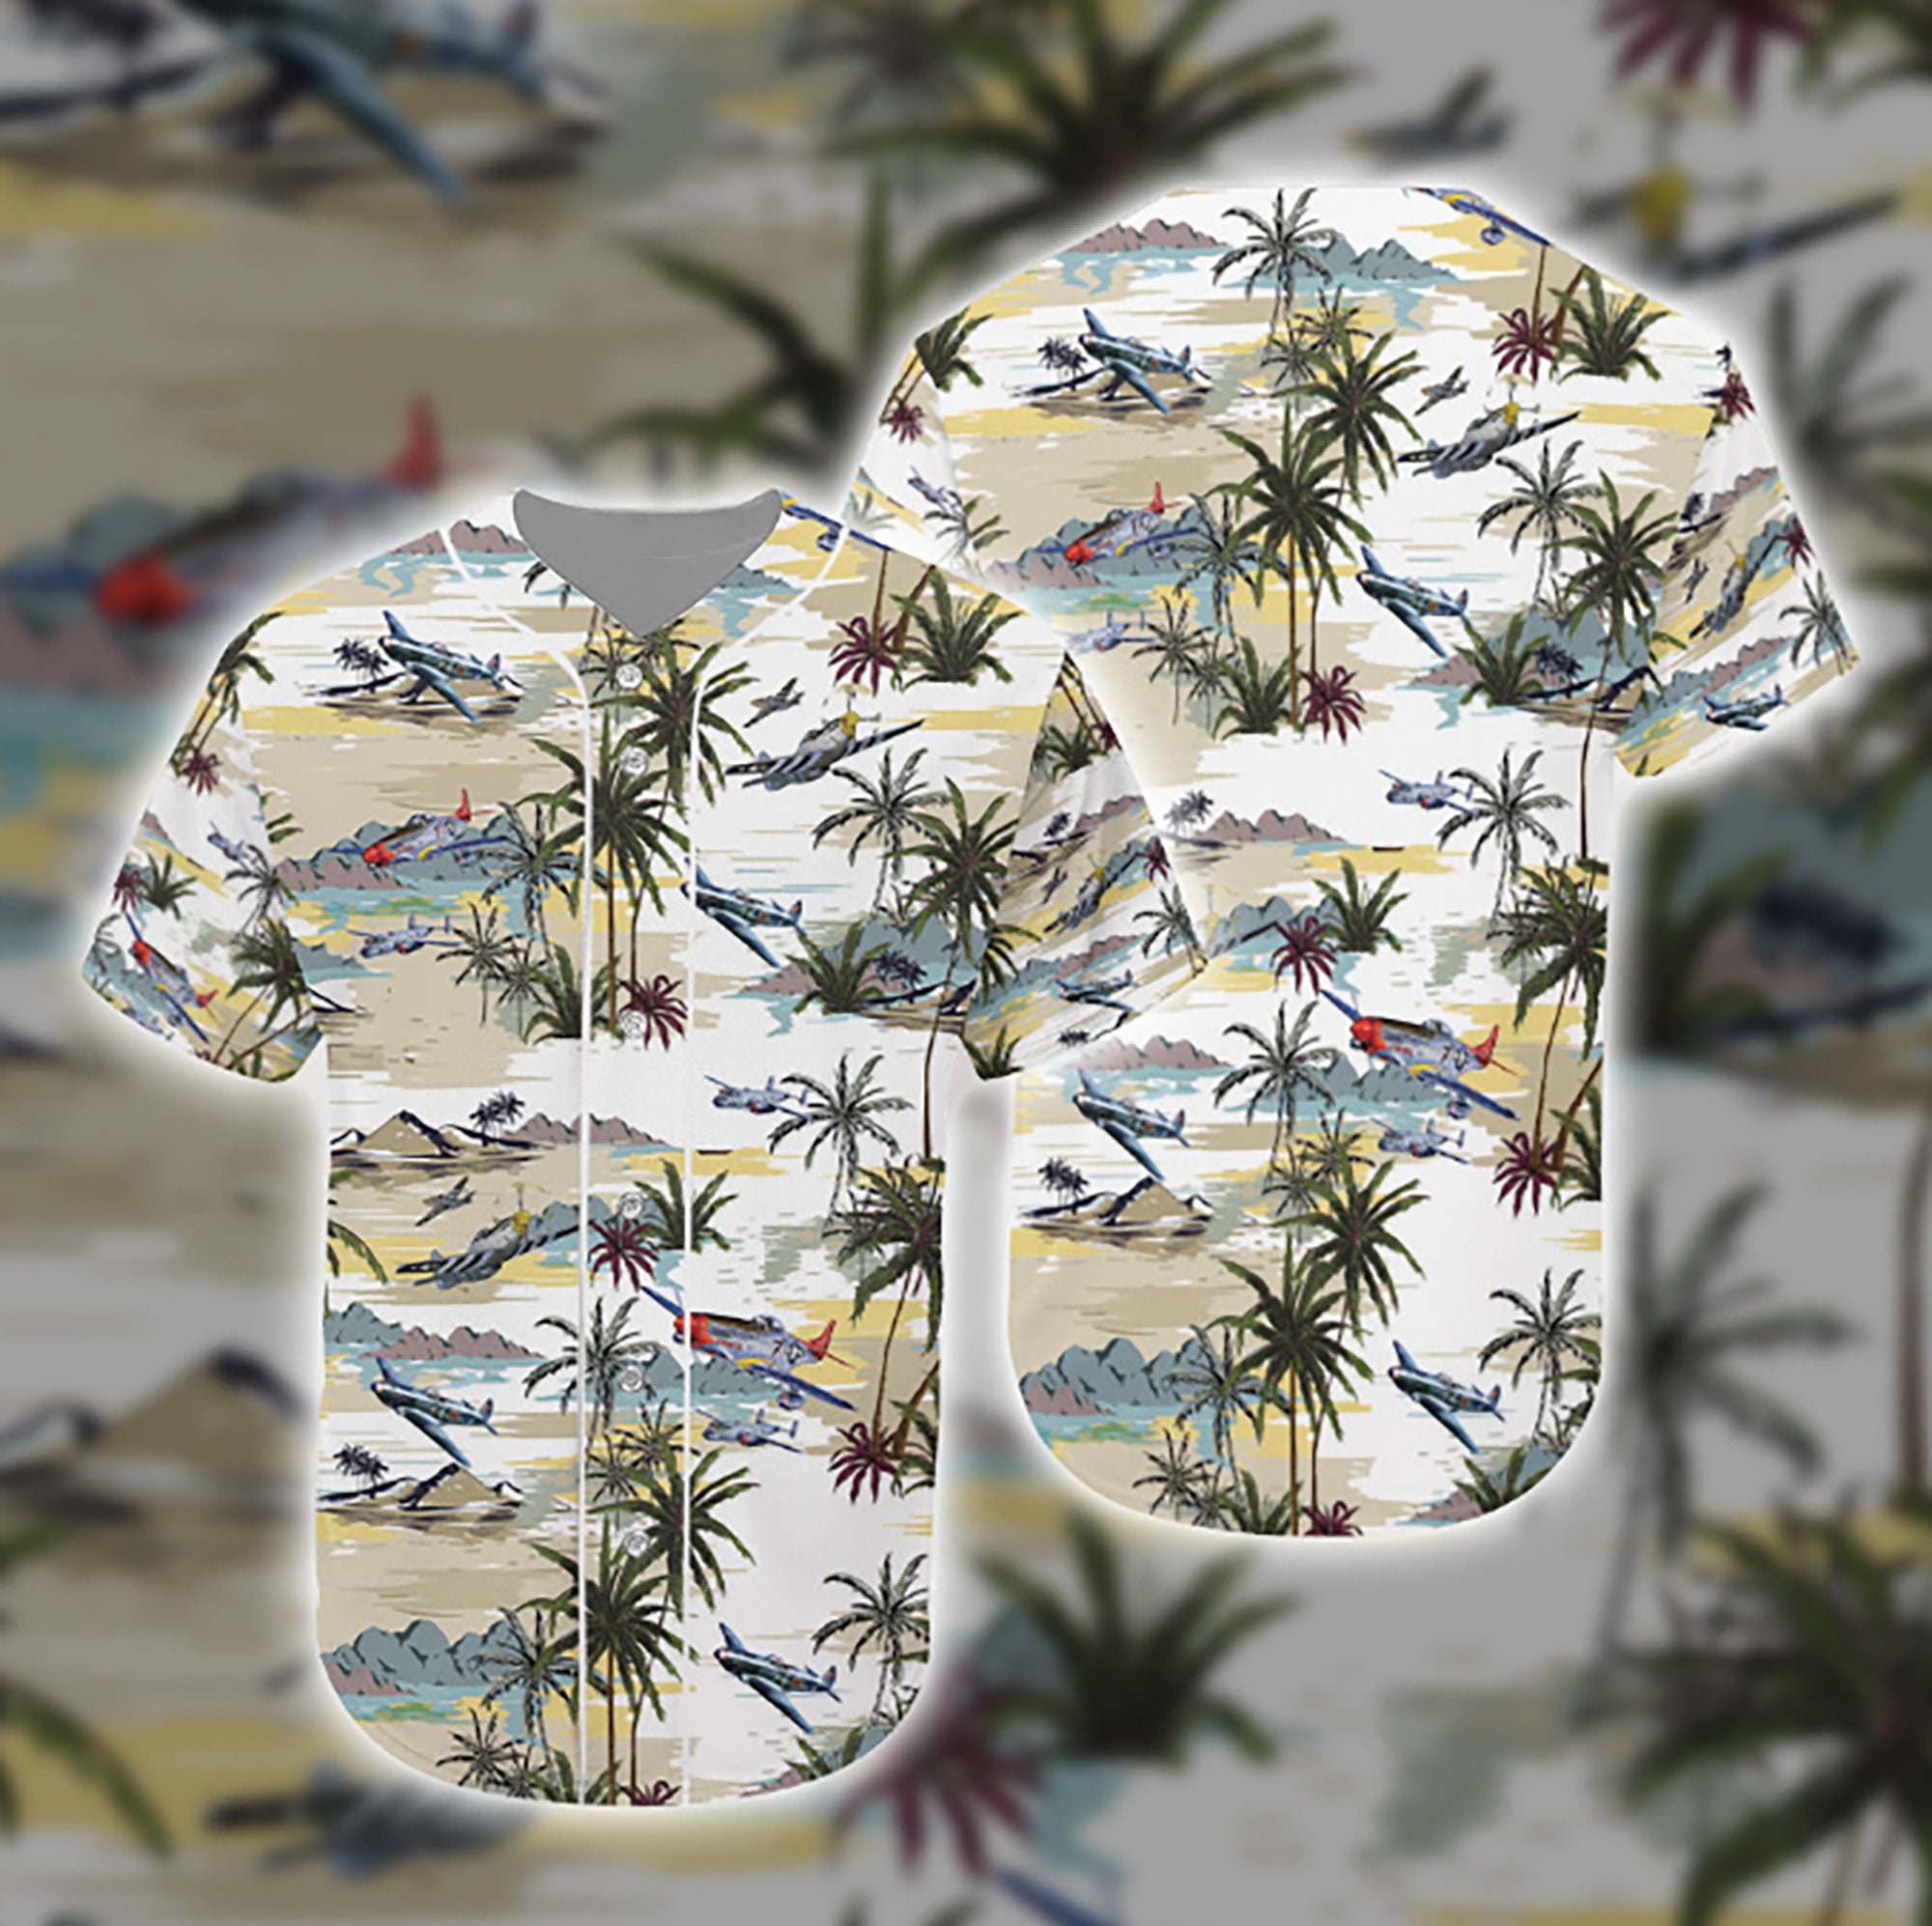 Aircraft Hawaiian Pattern Unisex Short Sleeve 3D All Over Print Baseball Jersey Shirt Size S-5XL - Roticstore Design